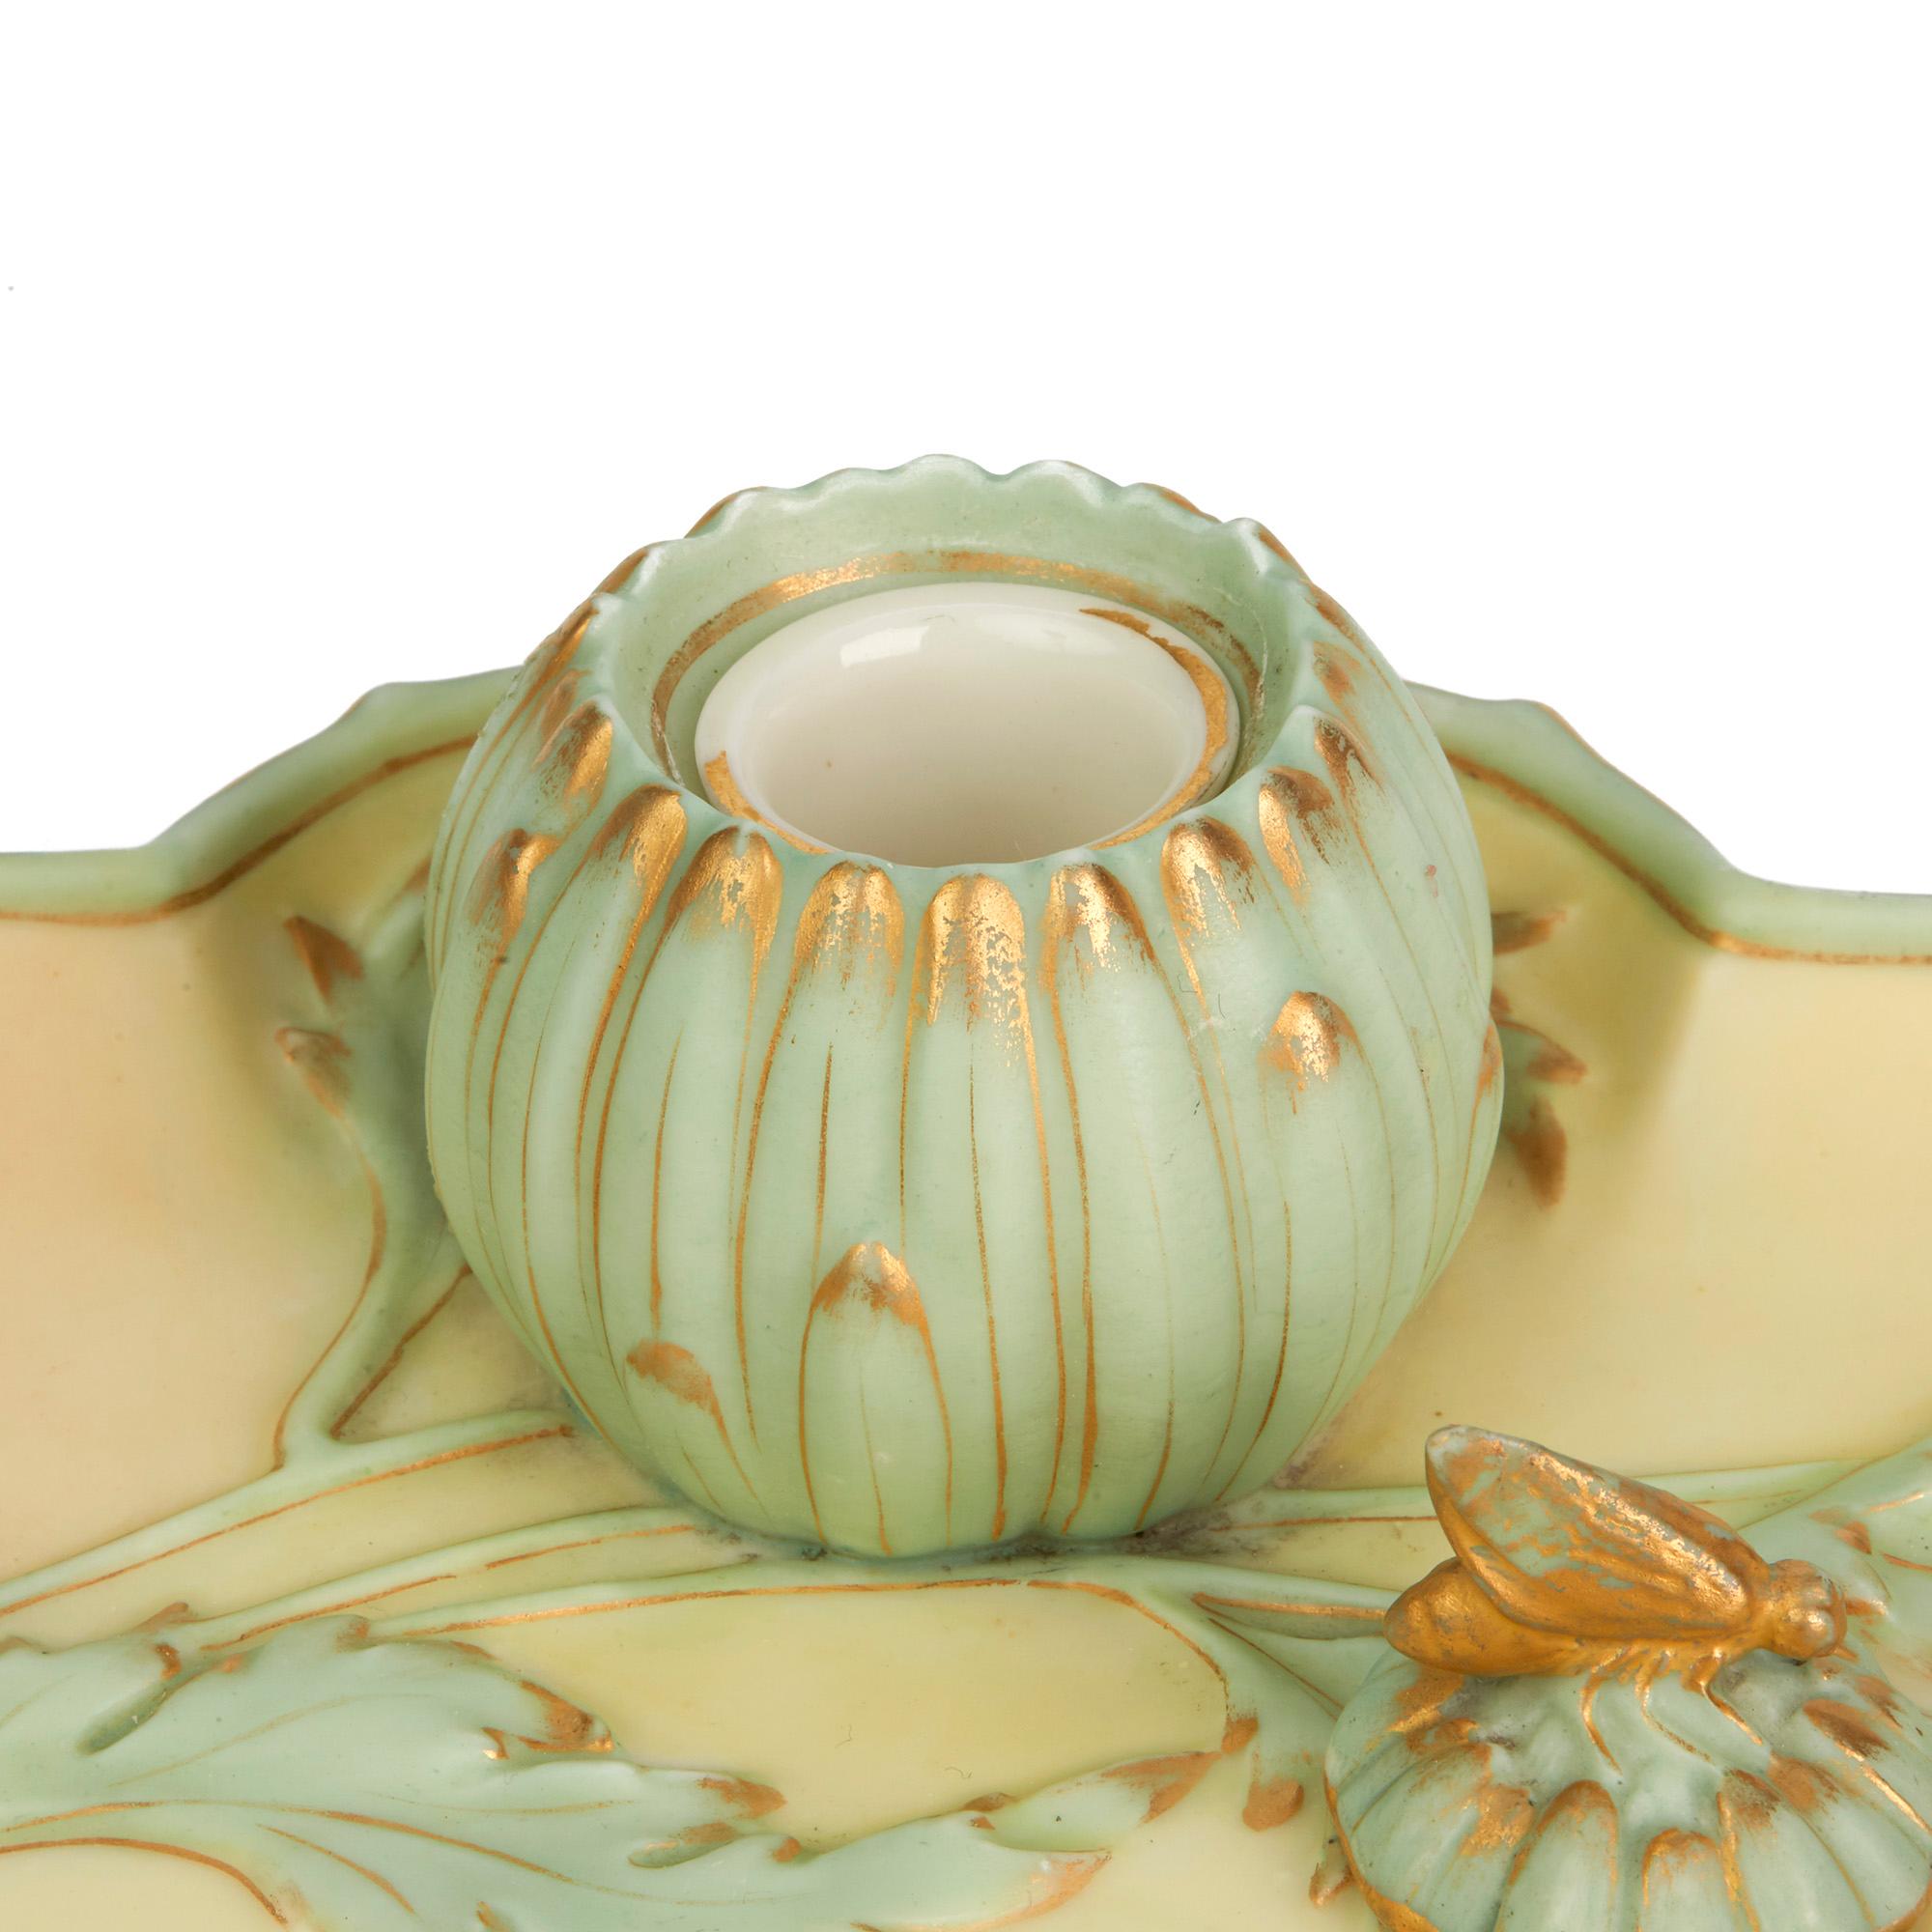 Une élégante et rare table de bureau en porcelaine Royal Worcester Art Nouveau, décorée de couleurs blush et moulée en bas-relief avec des motifs floraux en traîneaux, datée de 1894. Le support est de forme rectangulaire avec un bord surélevé et des